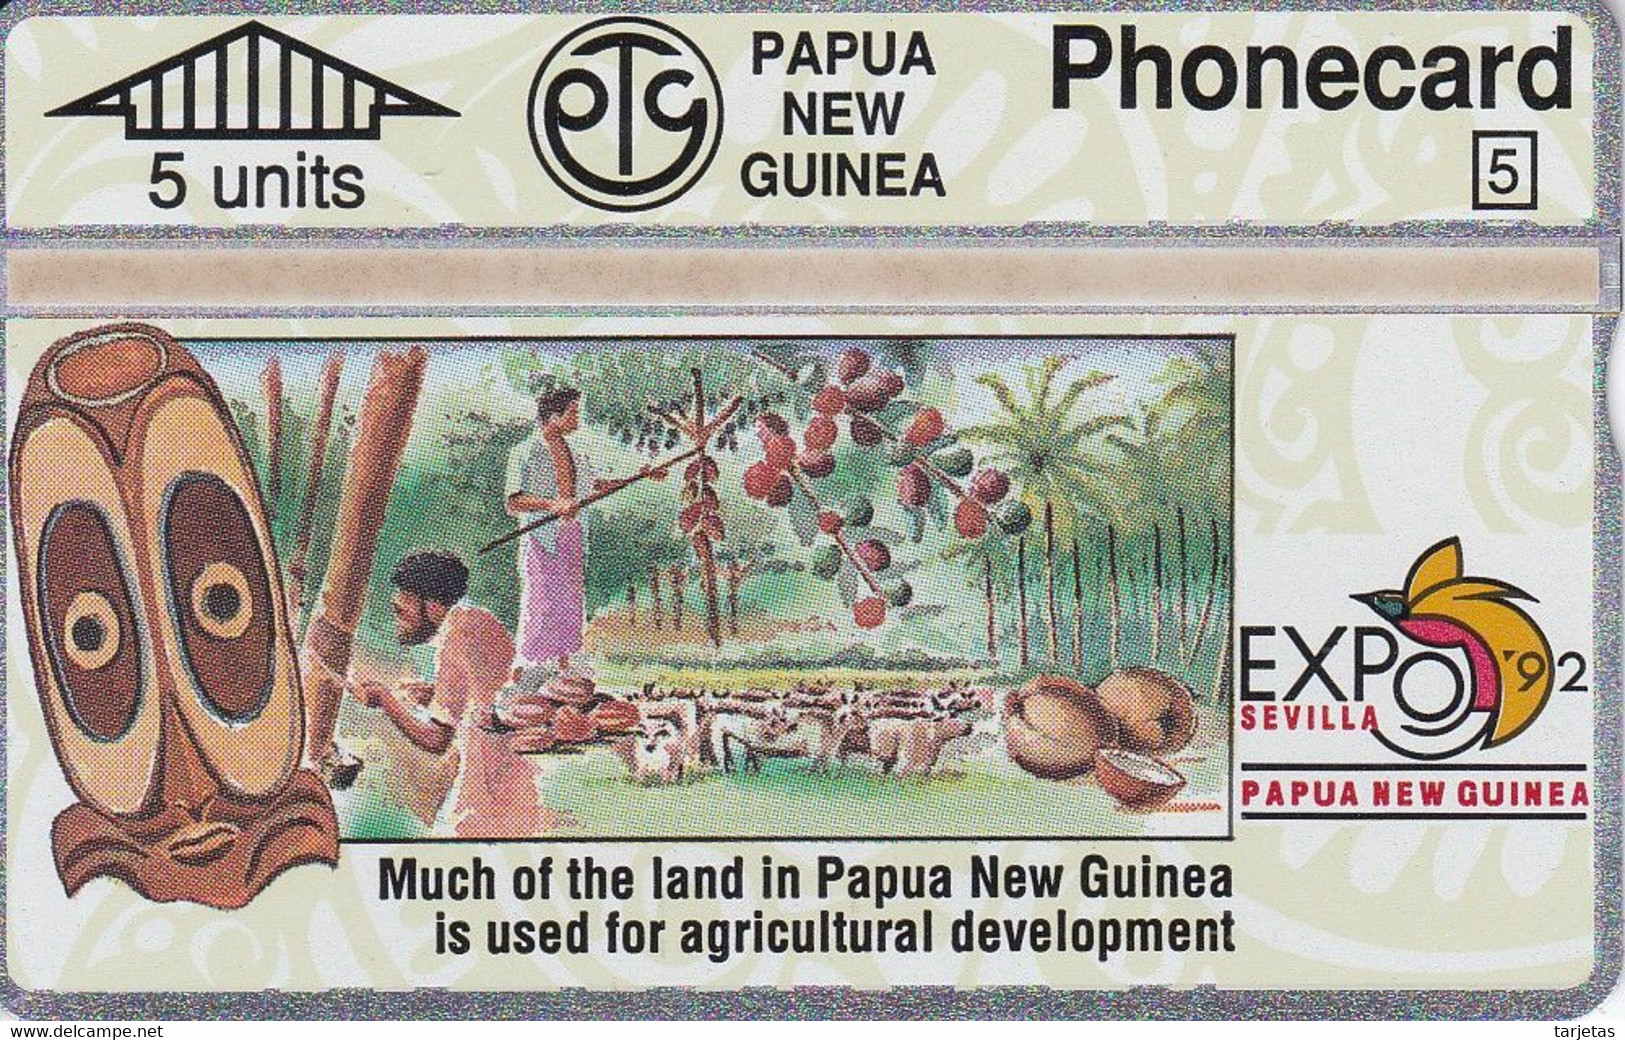 TARJETA DE PAPUA Y NUEVA GUINEA EXPO 92 SEVILLA (203A) (NUEVA-MINT) - Papua Nuova Guinea